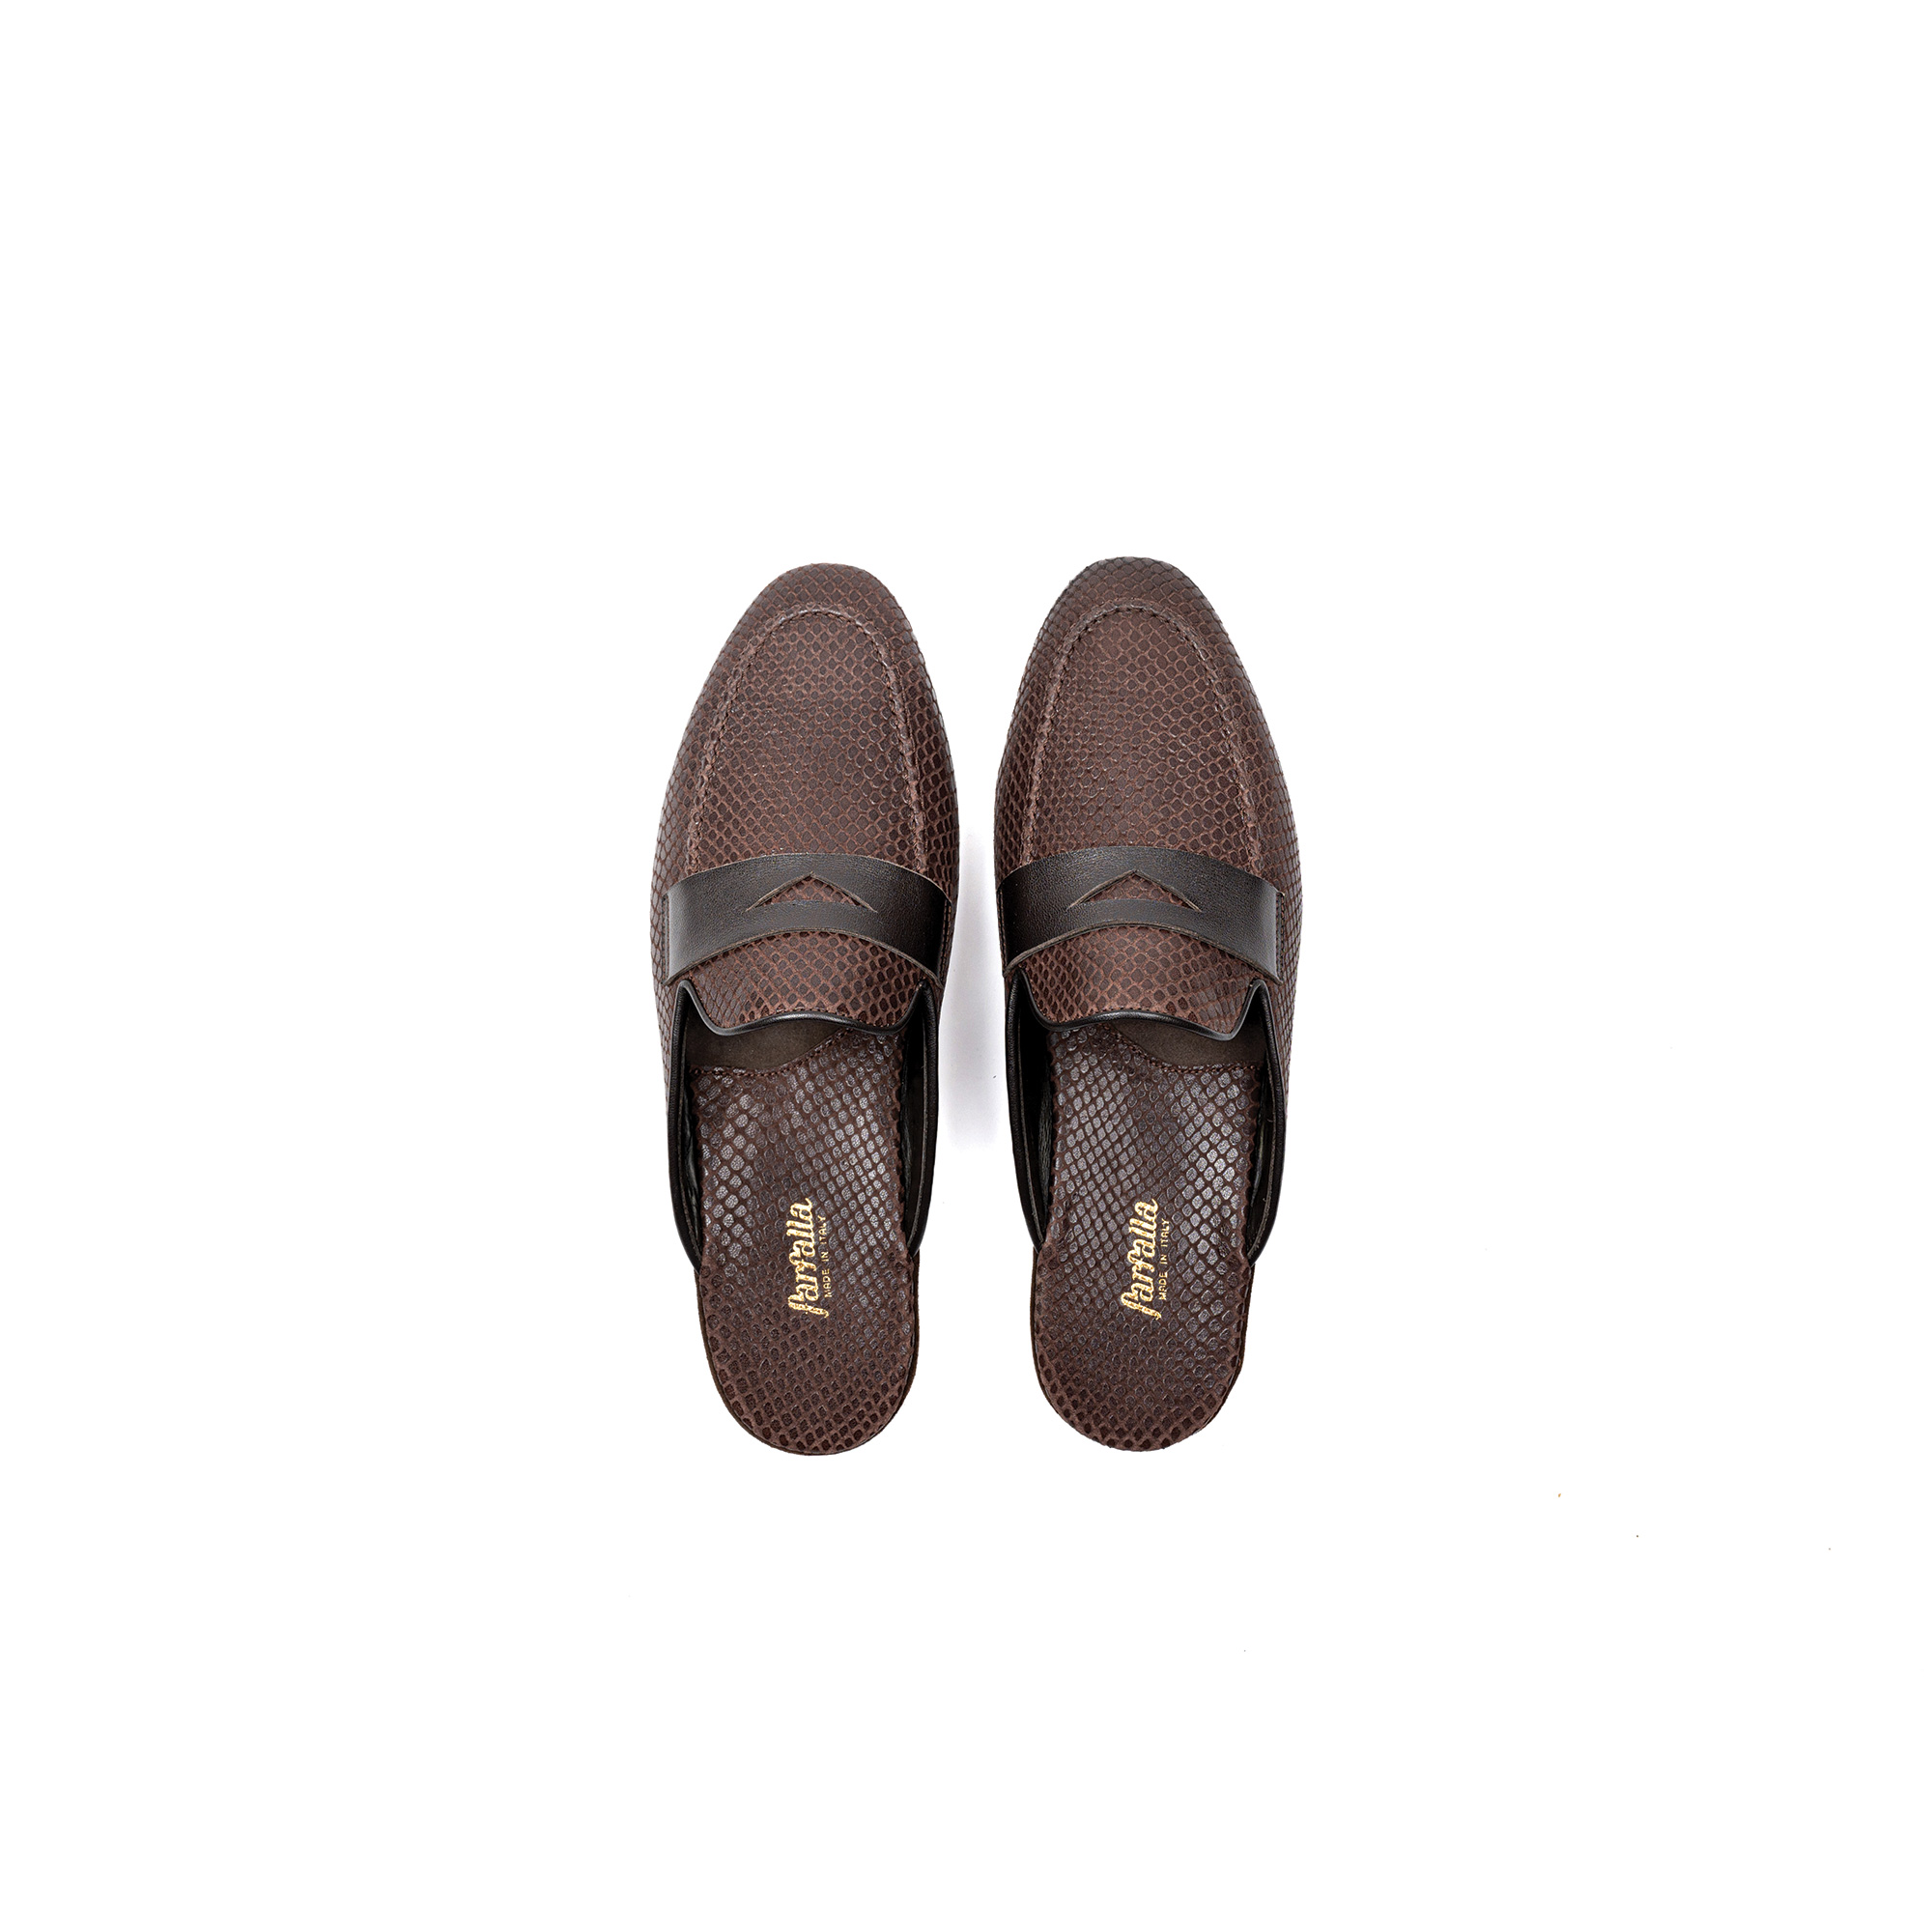 Pantofola interno lusso in pelle stampato exotic caffè - Farfalla italian slippers